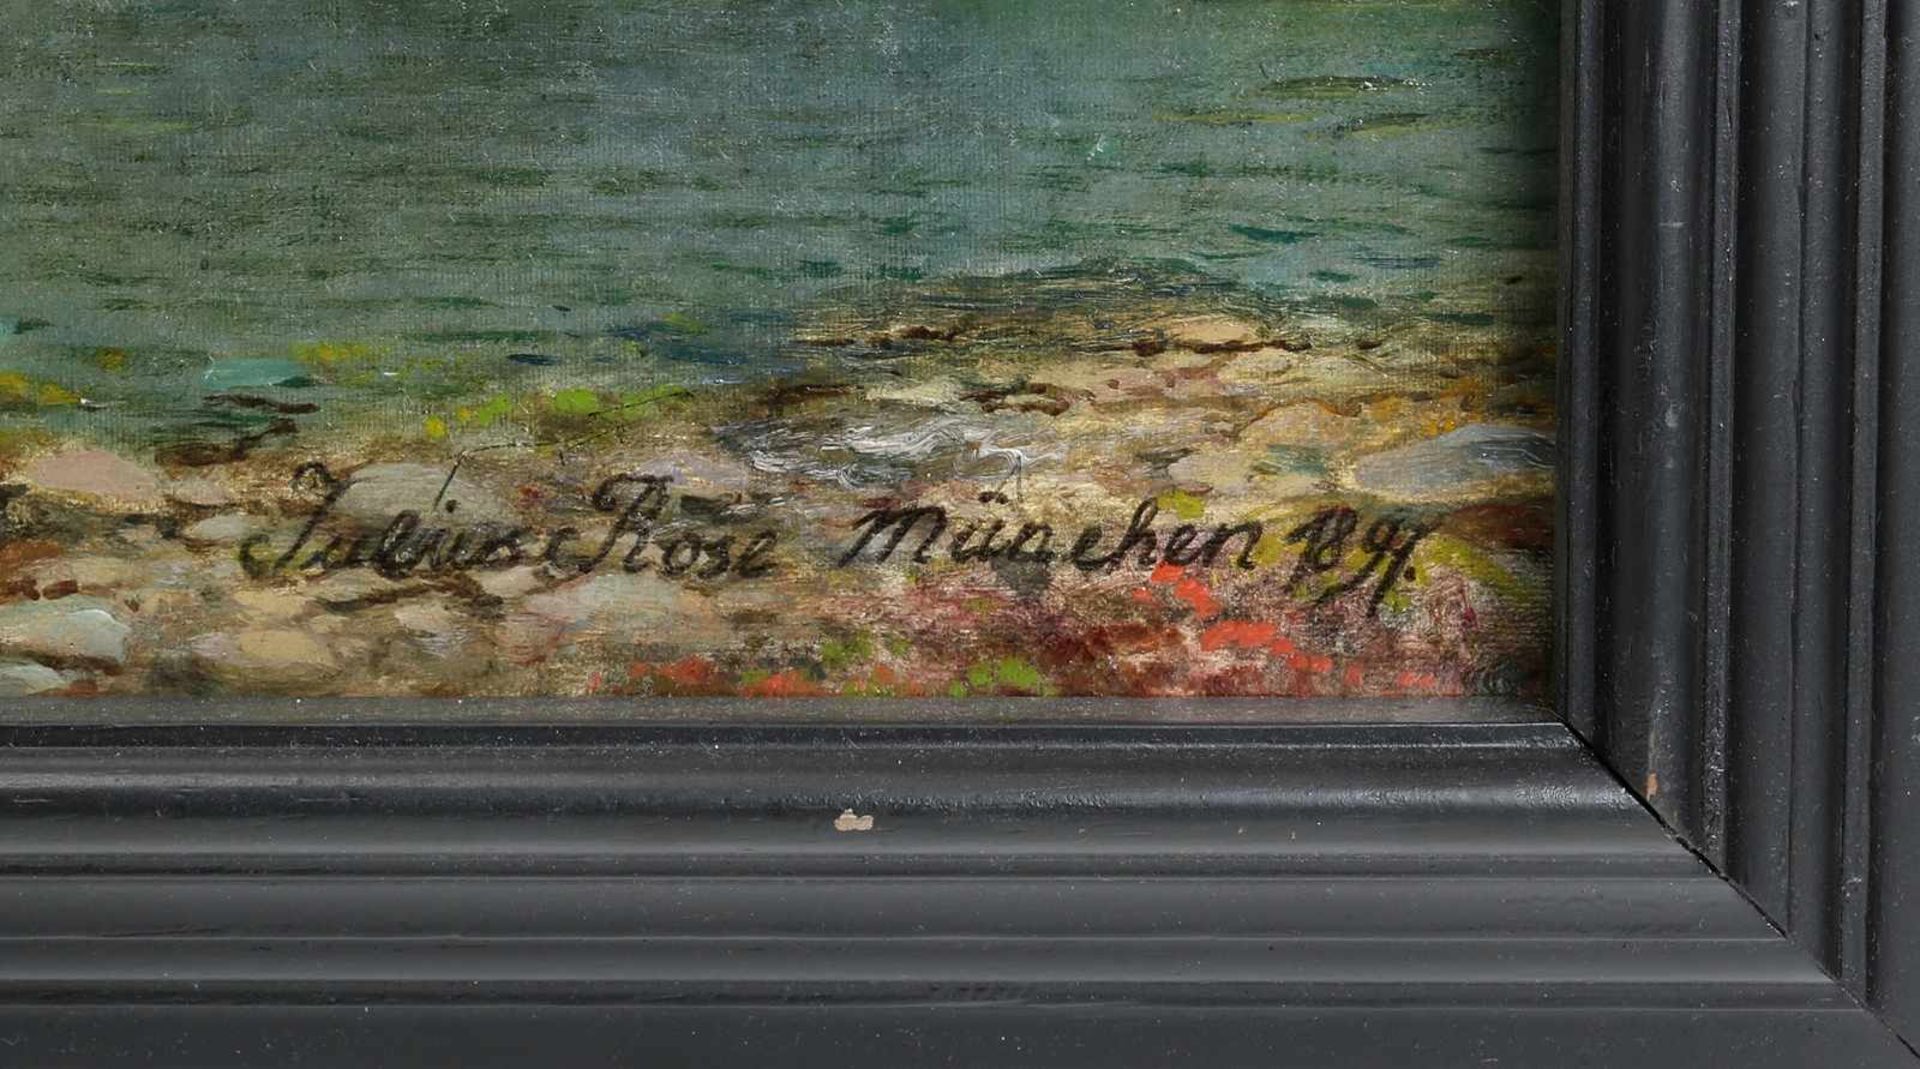 Rose, Karl Julius1828 Dresden - 1911 München. Blick auf den Hardangerfjord mit einem Postschiff an - Image 4 of 5